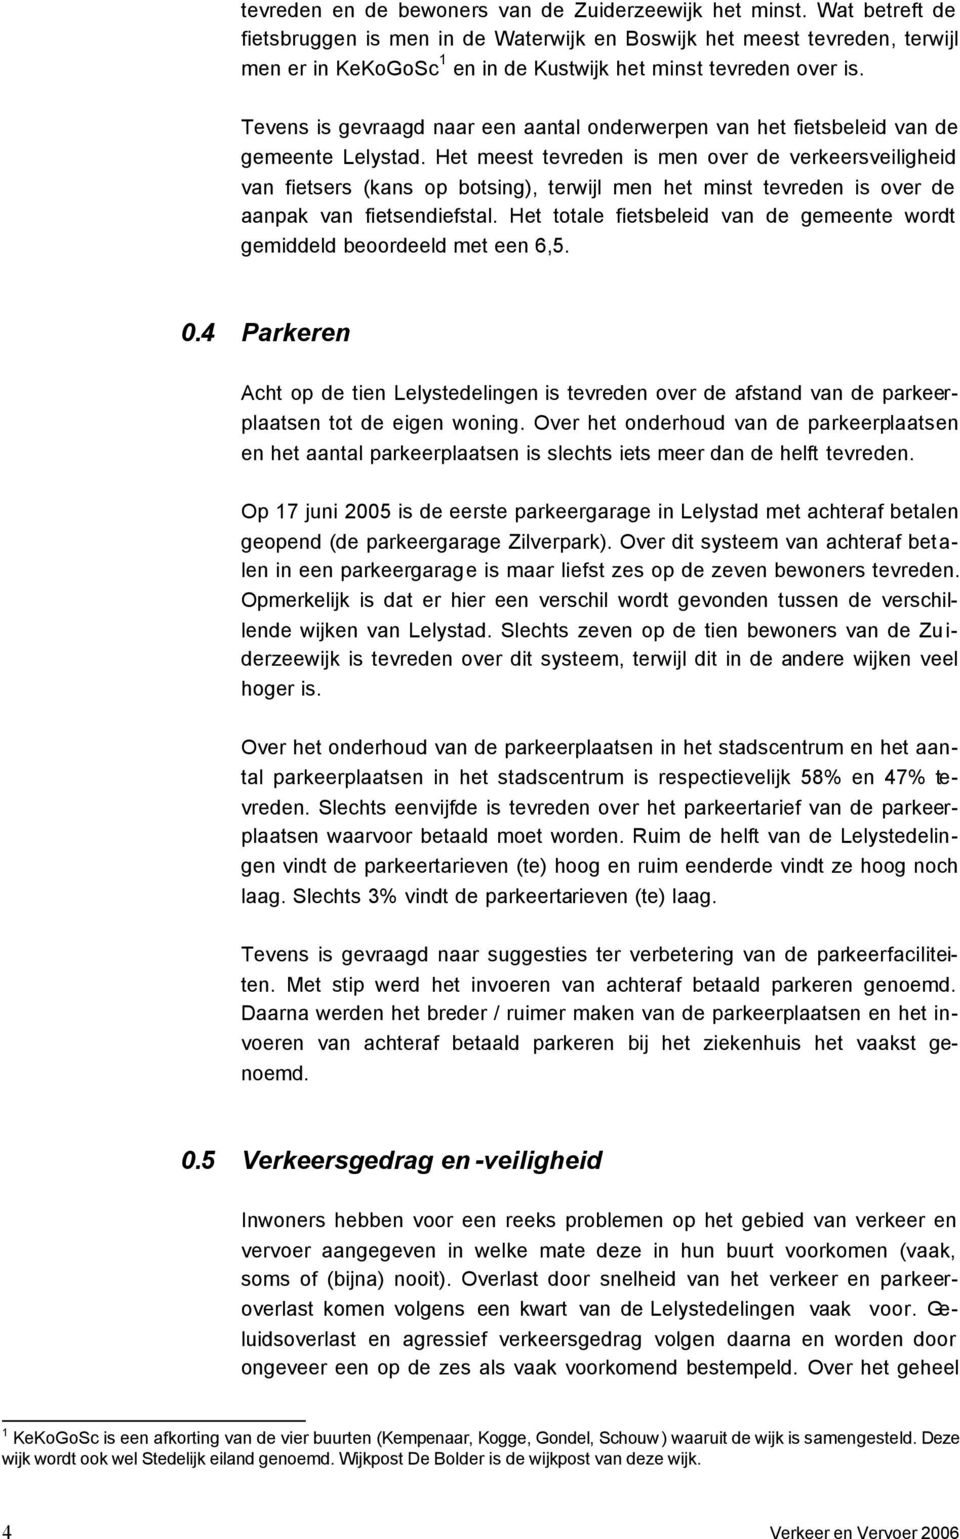 Tevens is gevraagd naar een aantal onderwerpen van het fietsbeleid van de gemeente Lelystad.